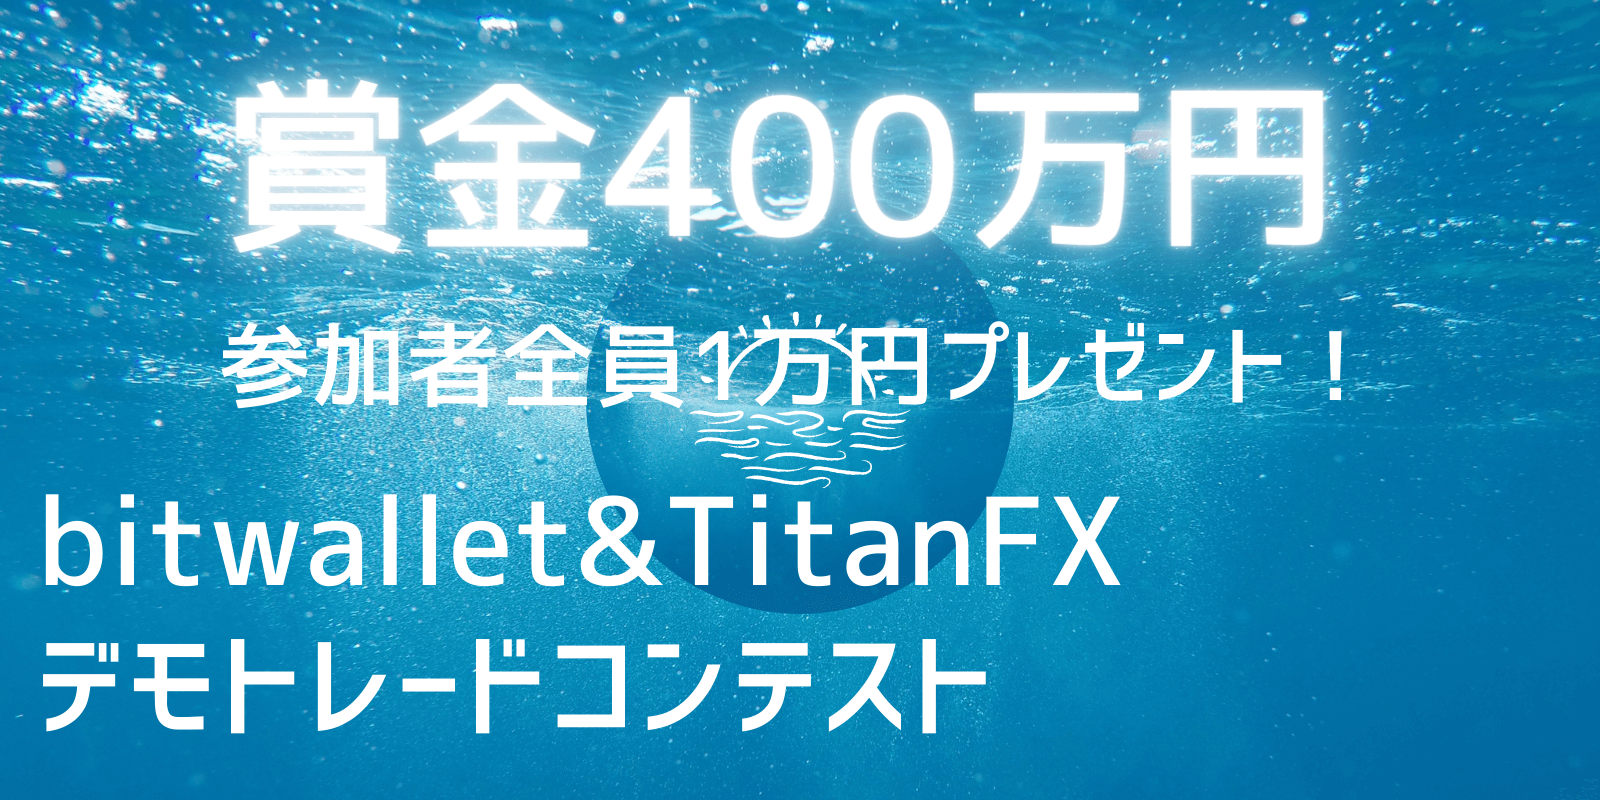 TitanFXデモコンテスト